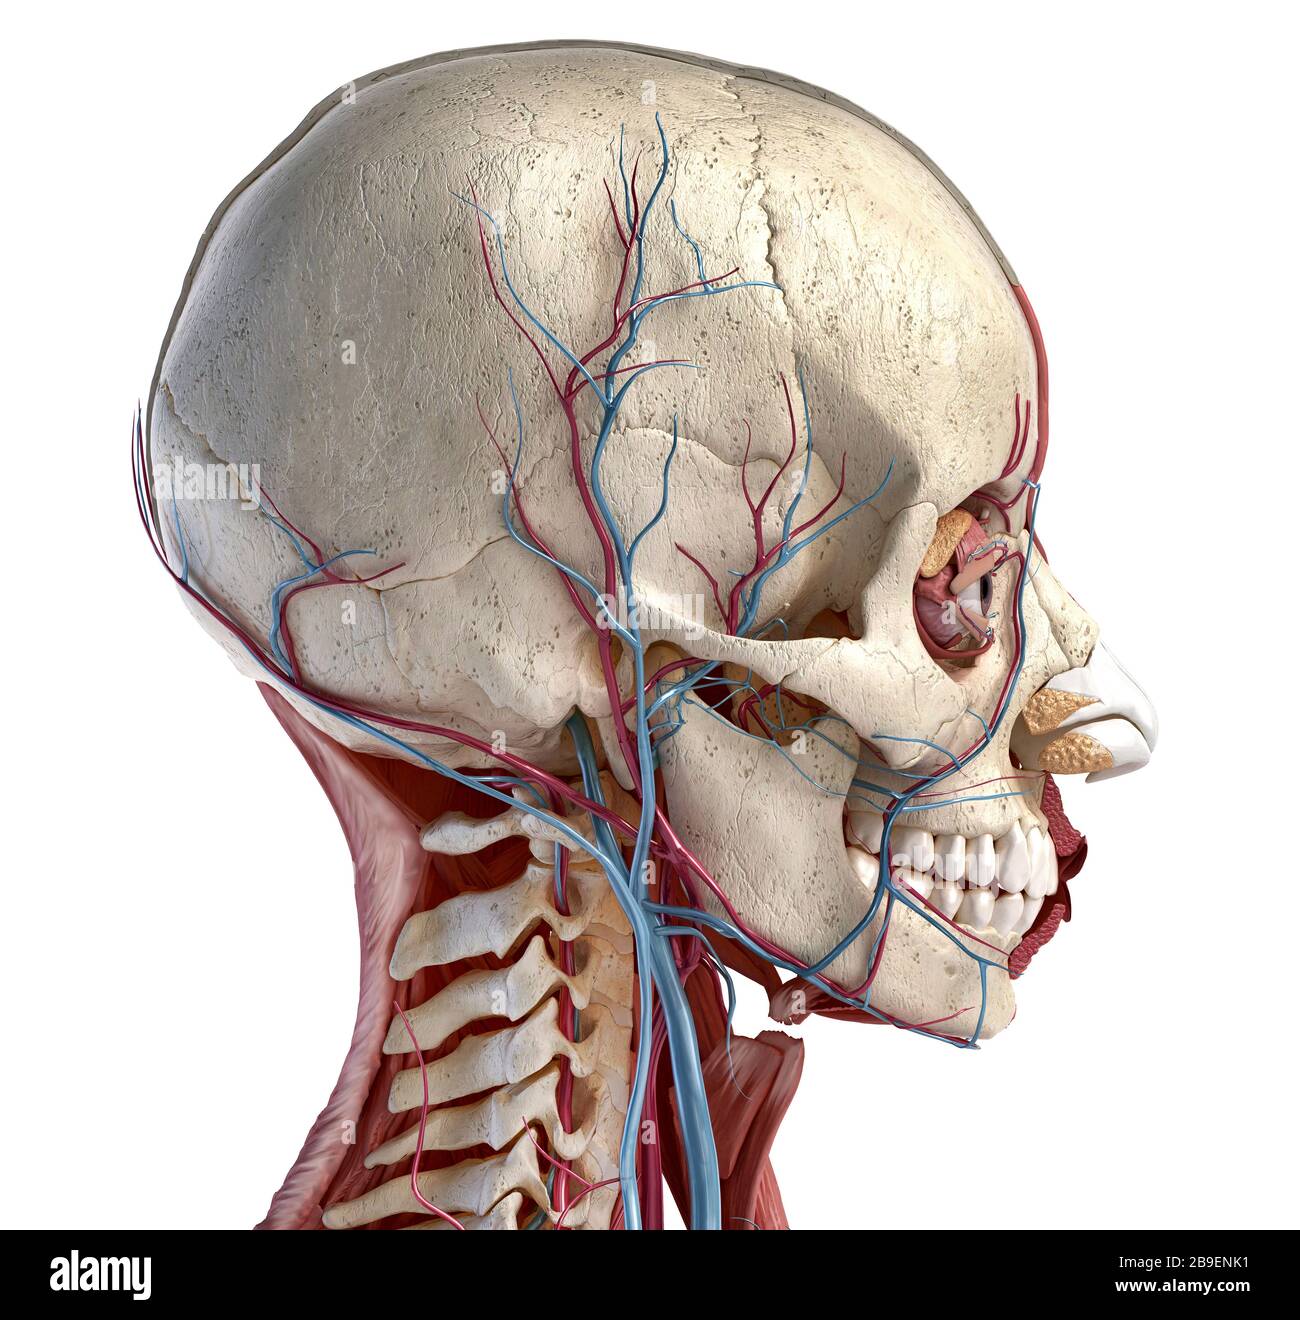 Vue latérale du crâne humain, des muscles, des yeux et des vaisseaux sanguins, fond noir. Banque D'Images